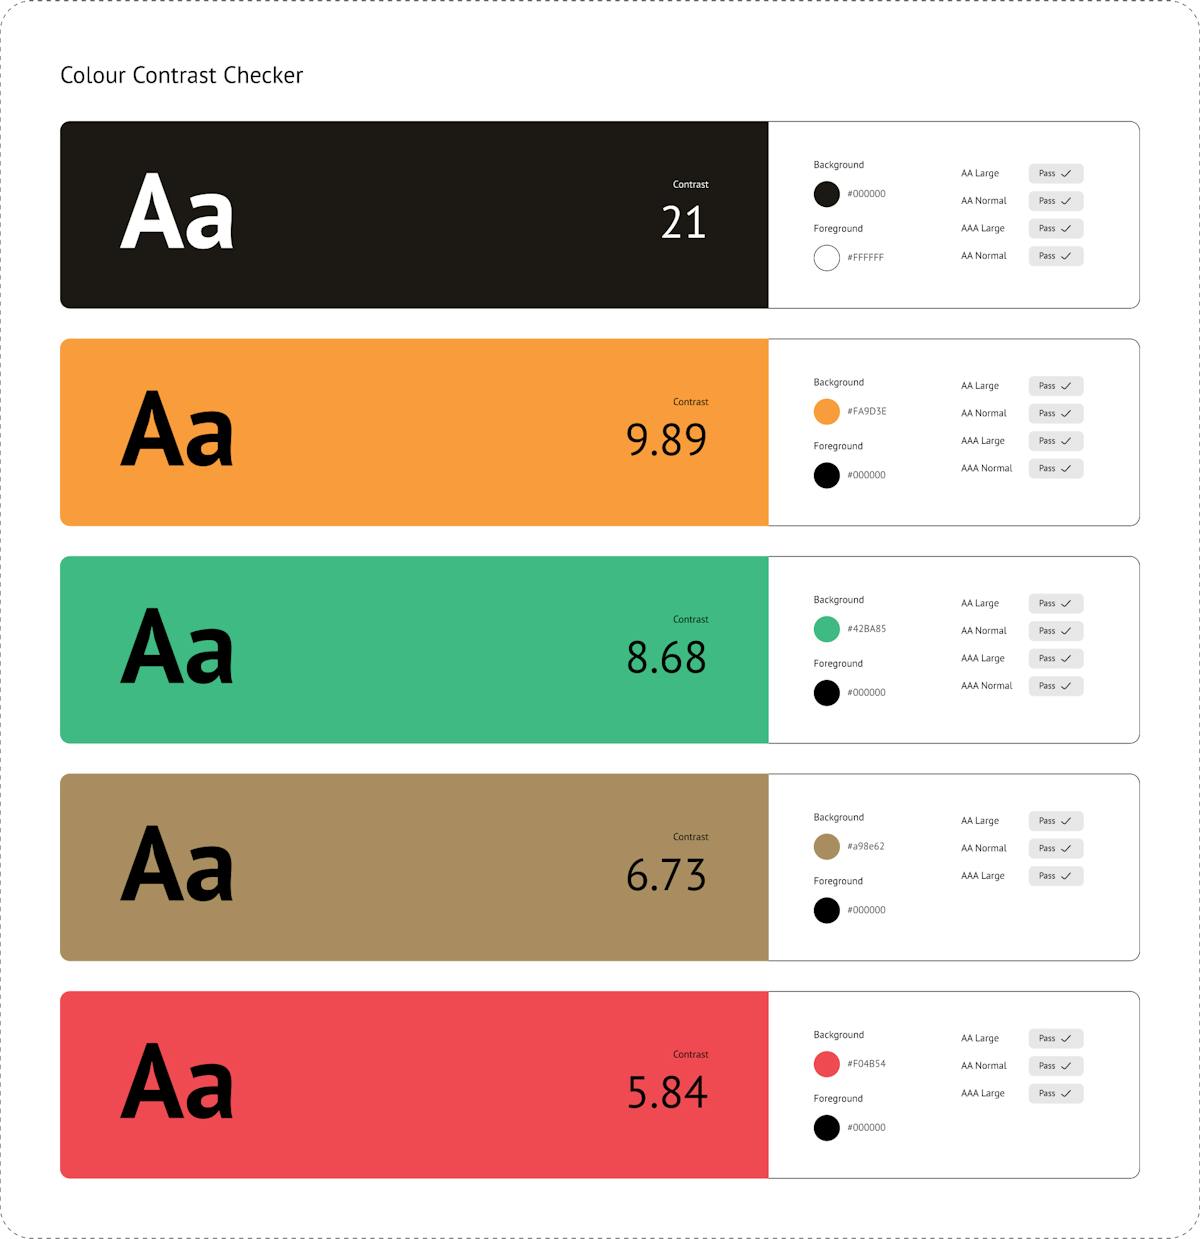 Schema che mostra il contrasto fra testo e colori per tutto il sito di Gallerie degli Uffizi, con risultati AA.